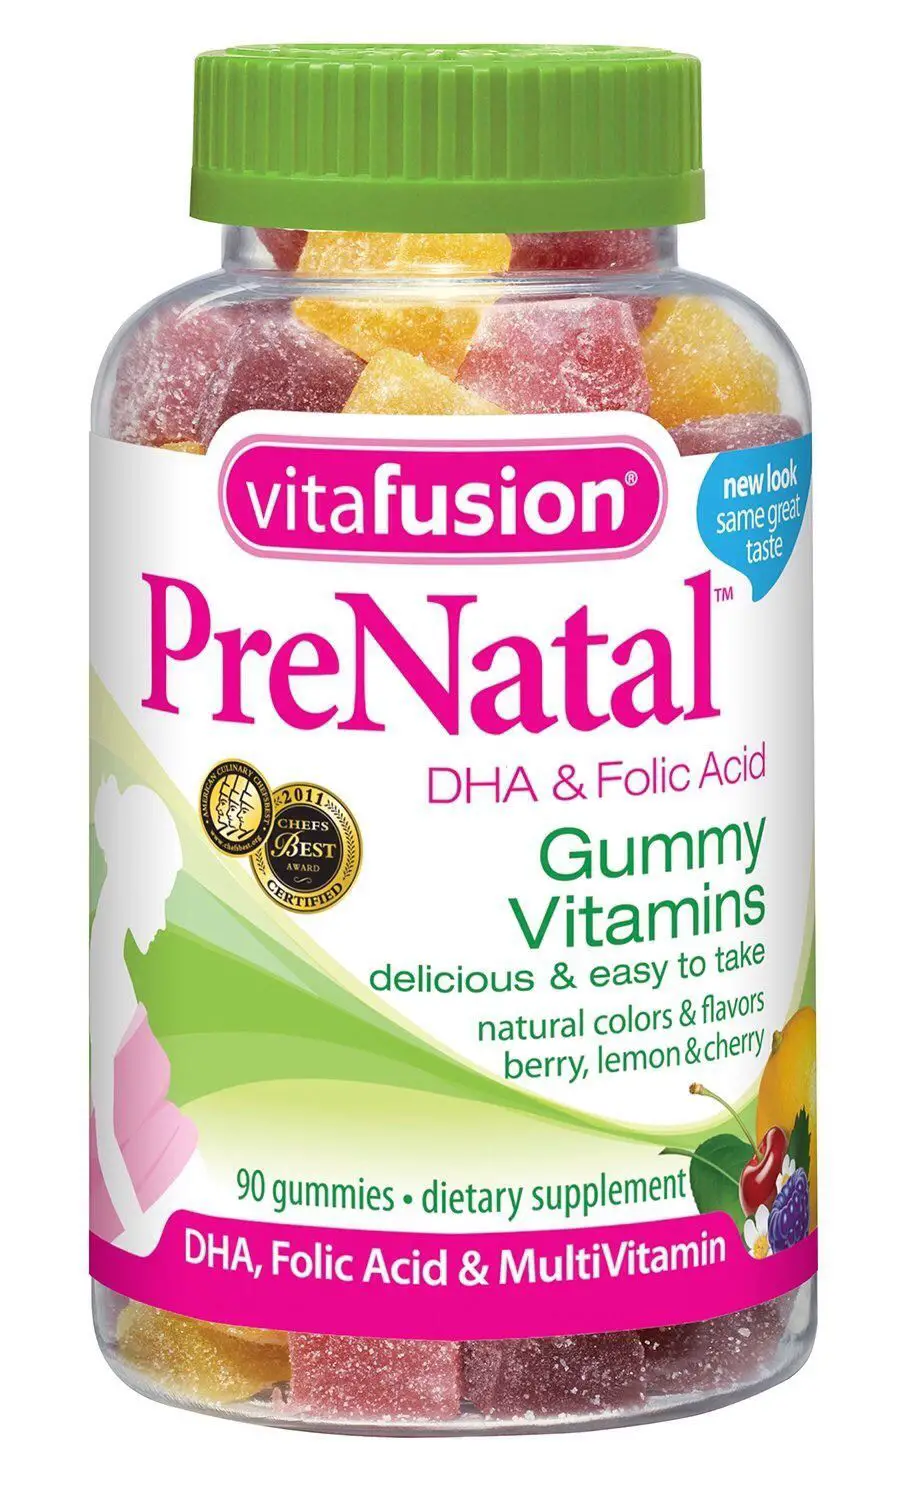 Should I Take Prenatal Vitamins If Not Pregnant